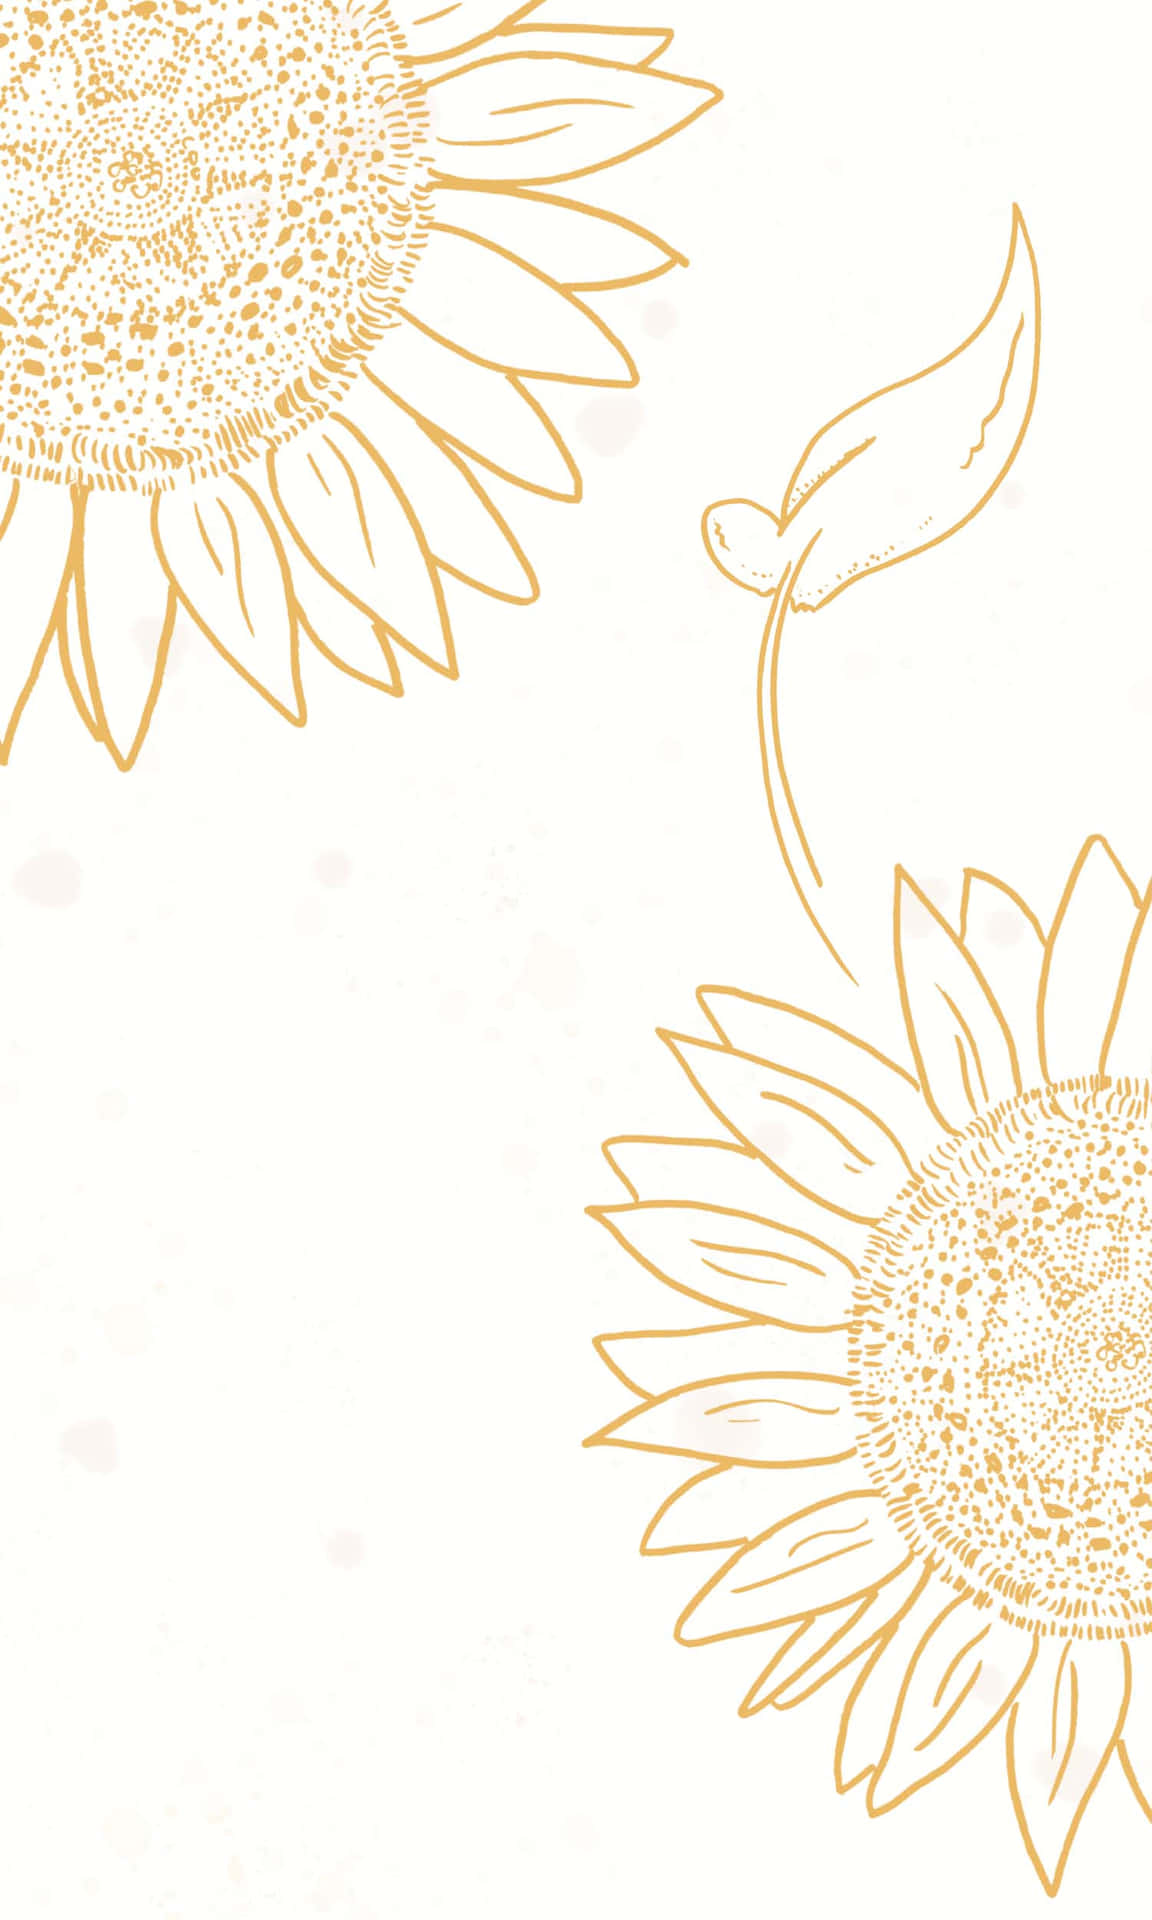 Genießensie Die Einfache Schönheit Einer Sonnenblume Mit Diesem Farbenfrohen Und Ästhetischen Sonnenblumen-hintergrund Für Das Iphone. Wallpaper